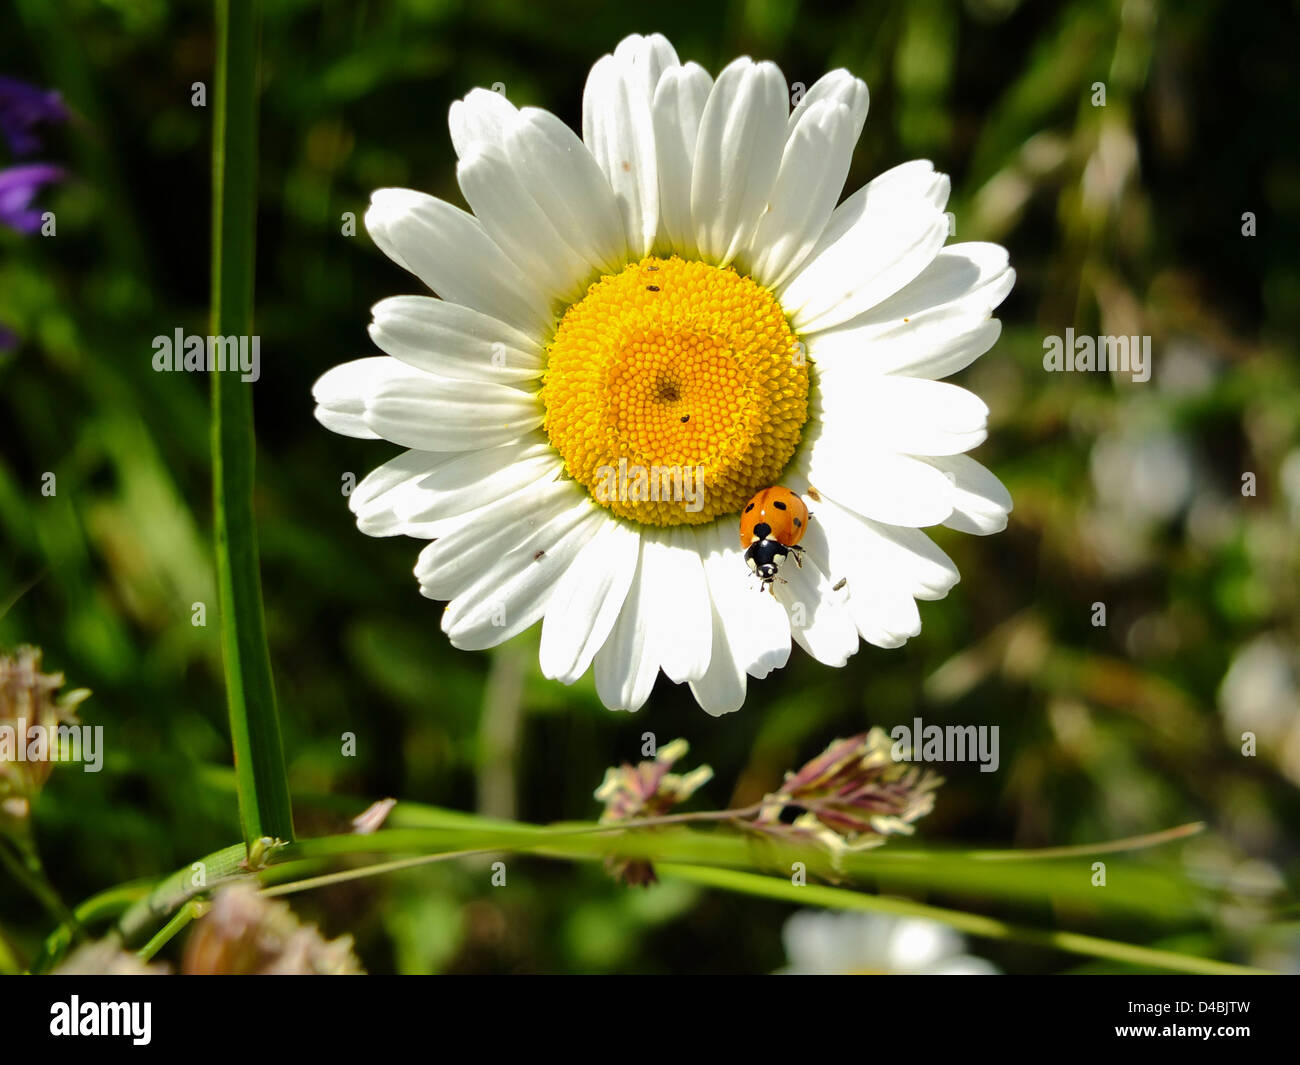 Daisy with ladybird / ladybug Stock Photo